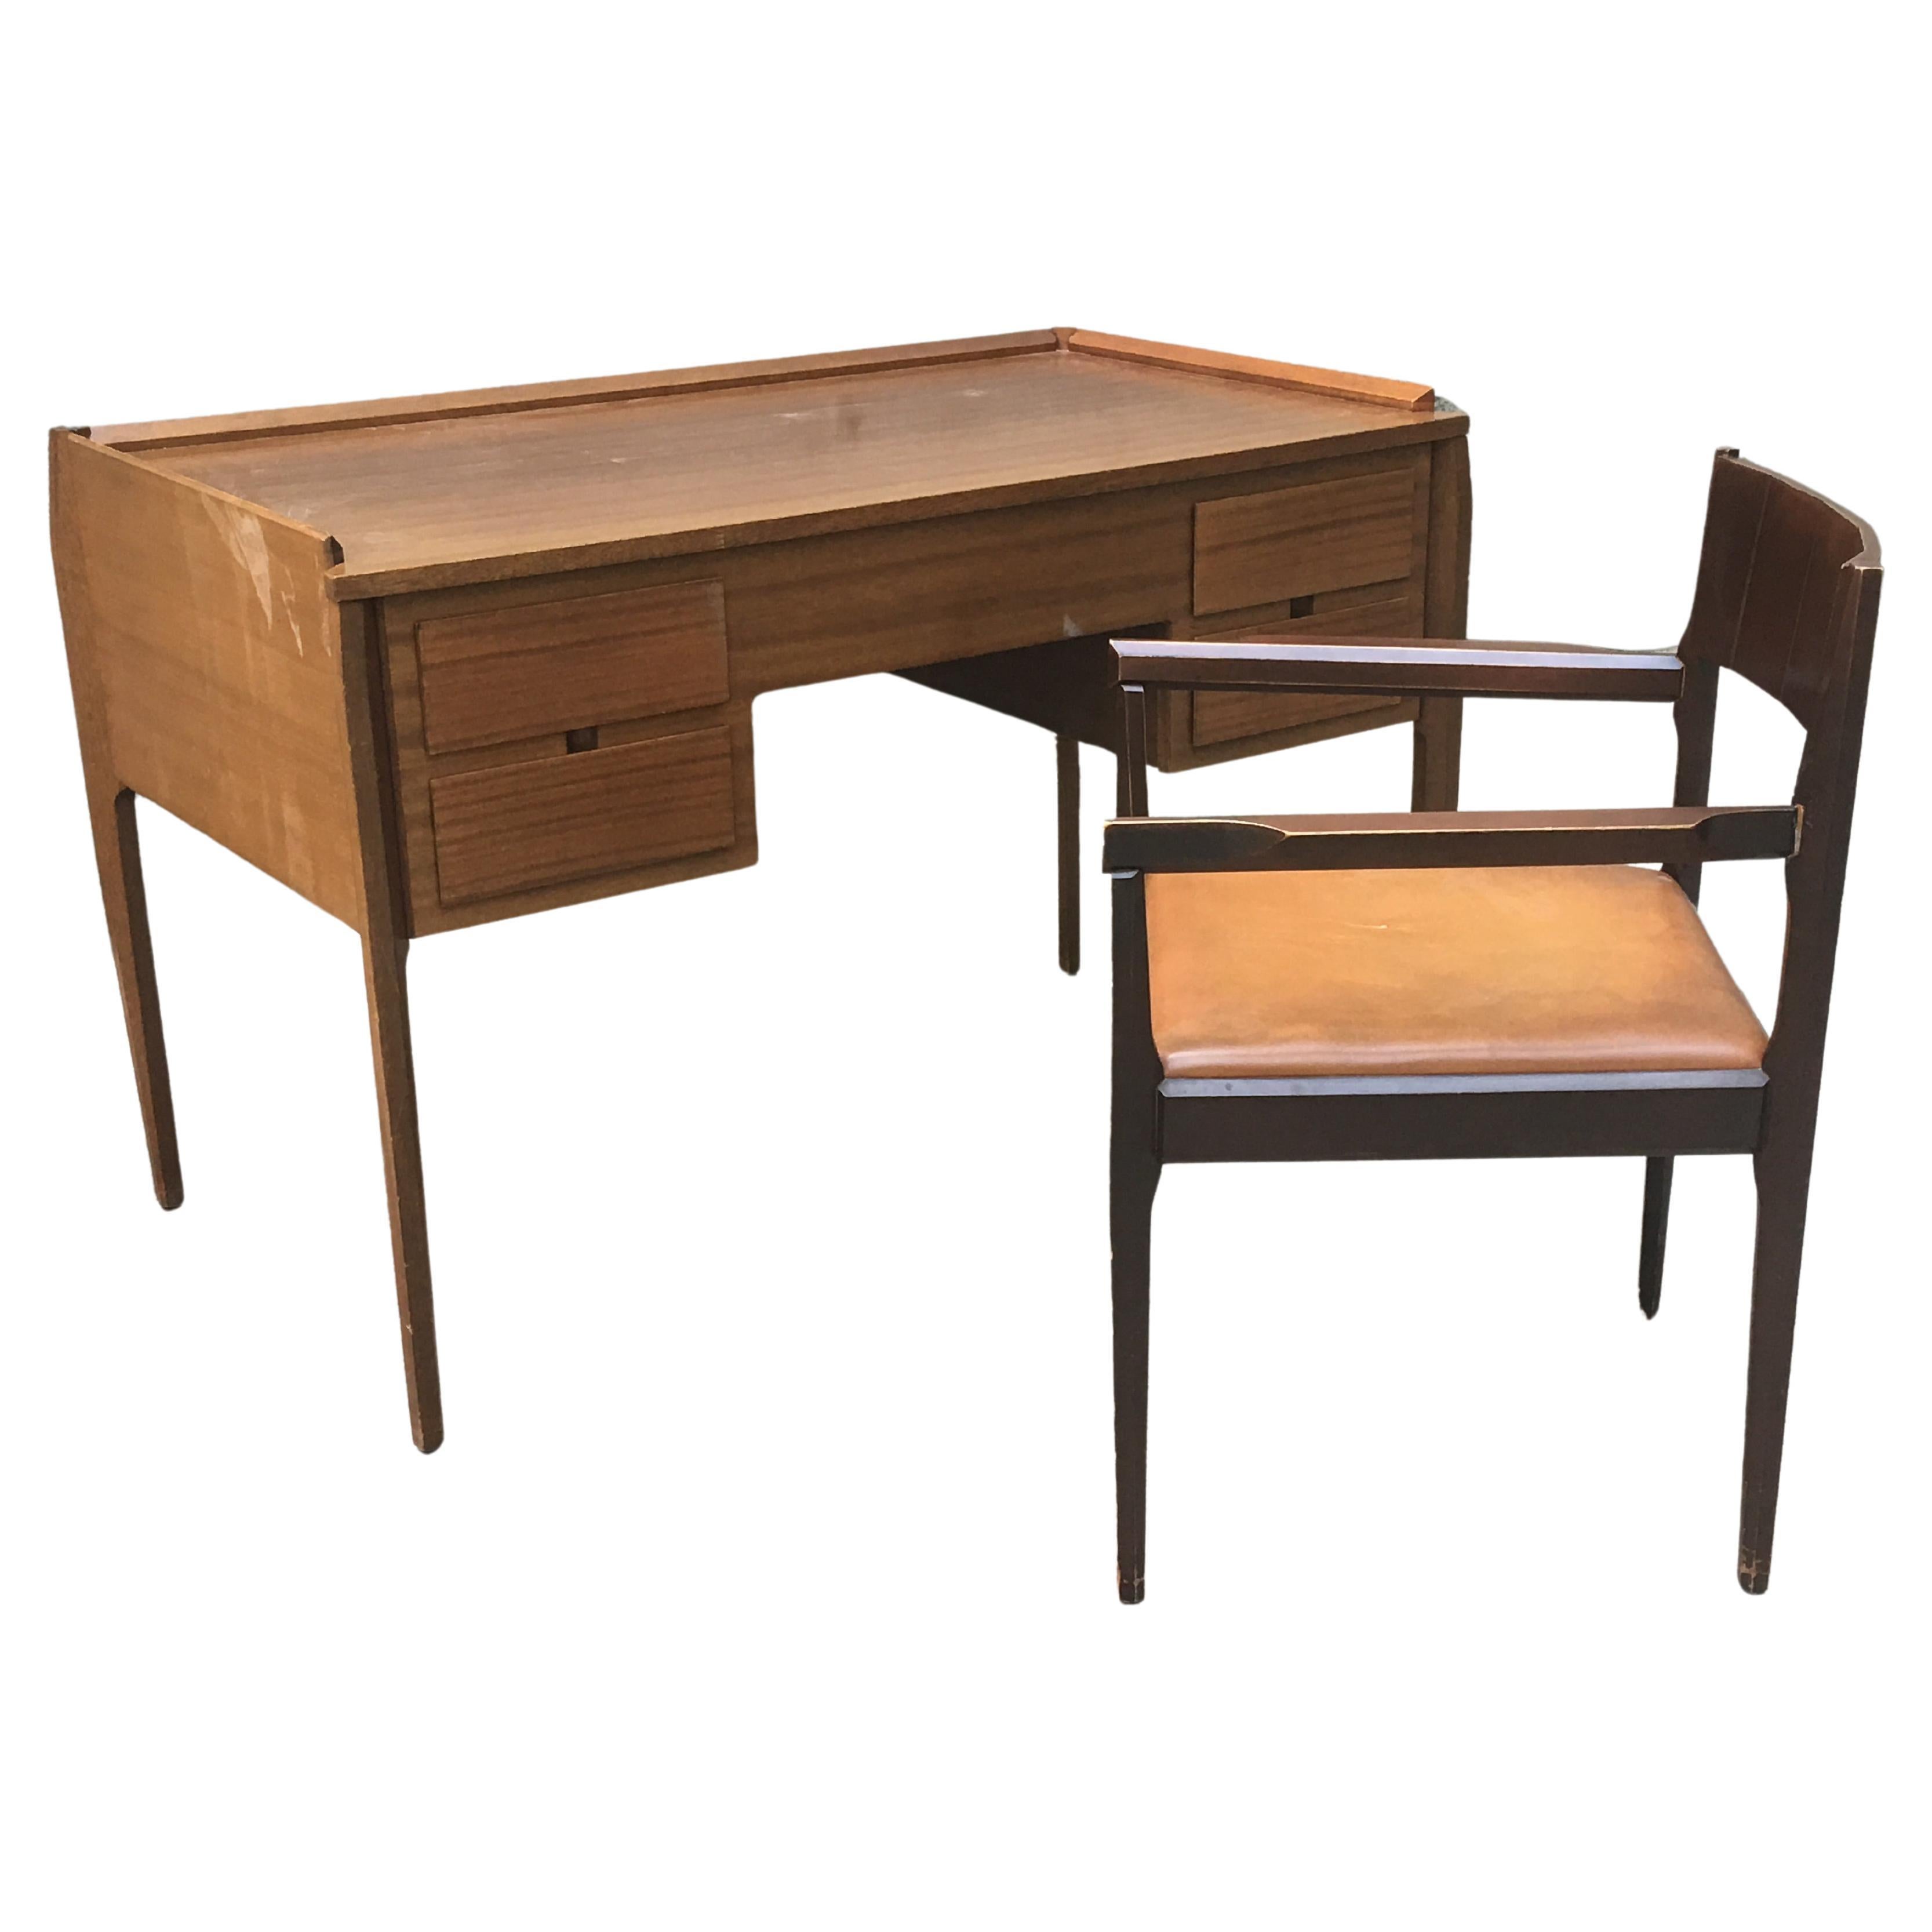 Kleiner italienischer Schreibtisch mit passendem Stuhl - 60er Jahre - Vittorio Dassi -  Satz von 2